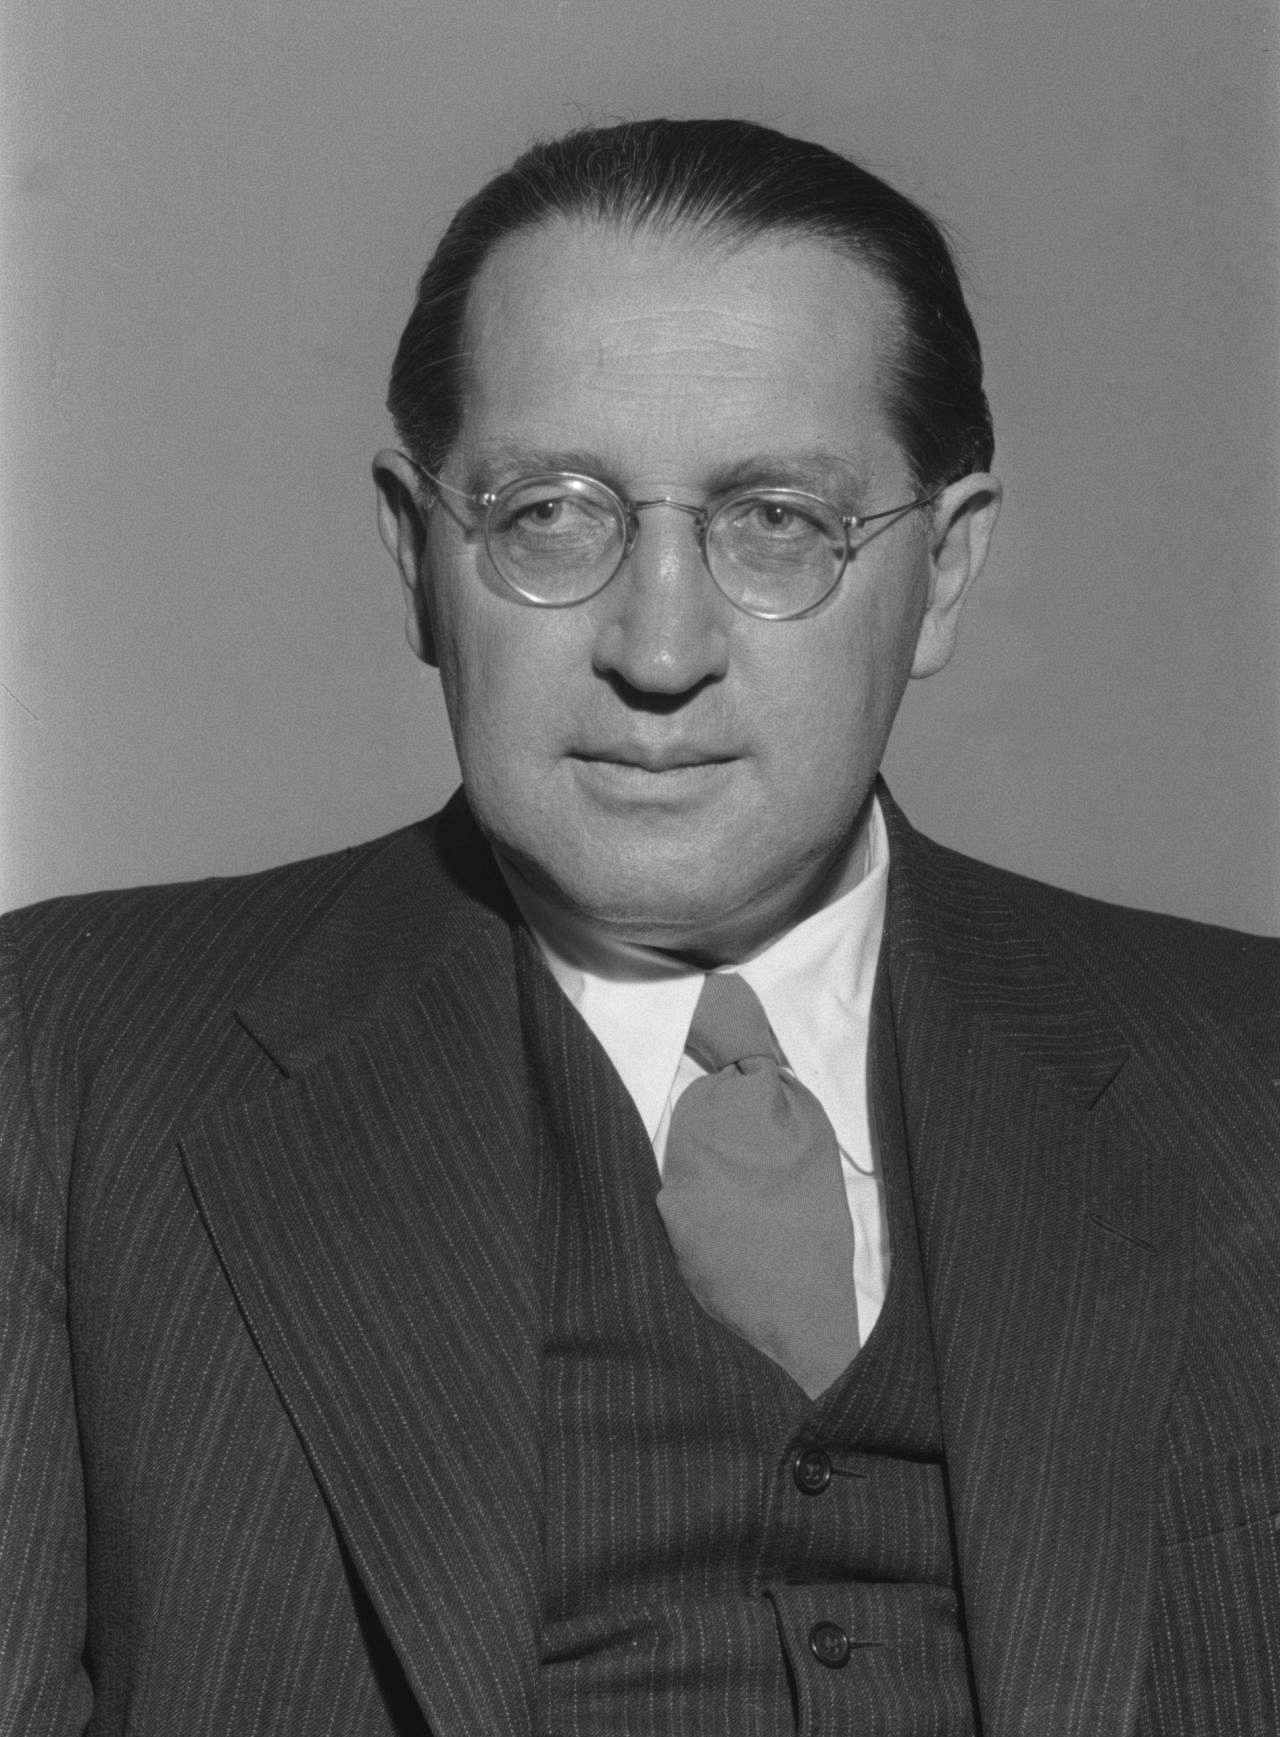 Porträtfoto von Thomas Dehler, Bundesminister der Justiz (1949-1953), 1953.